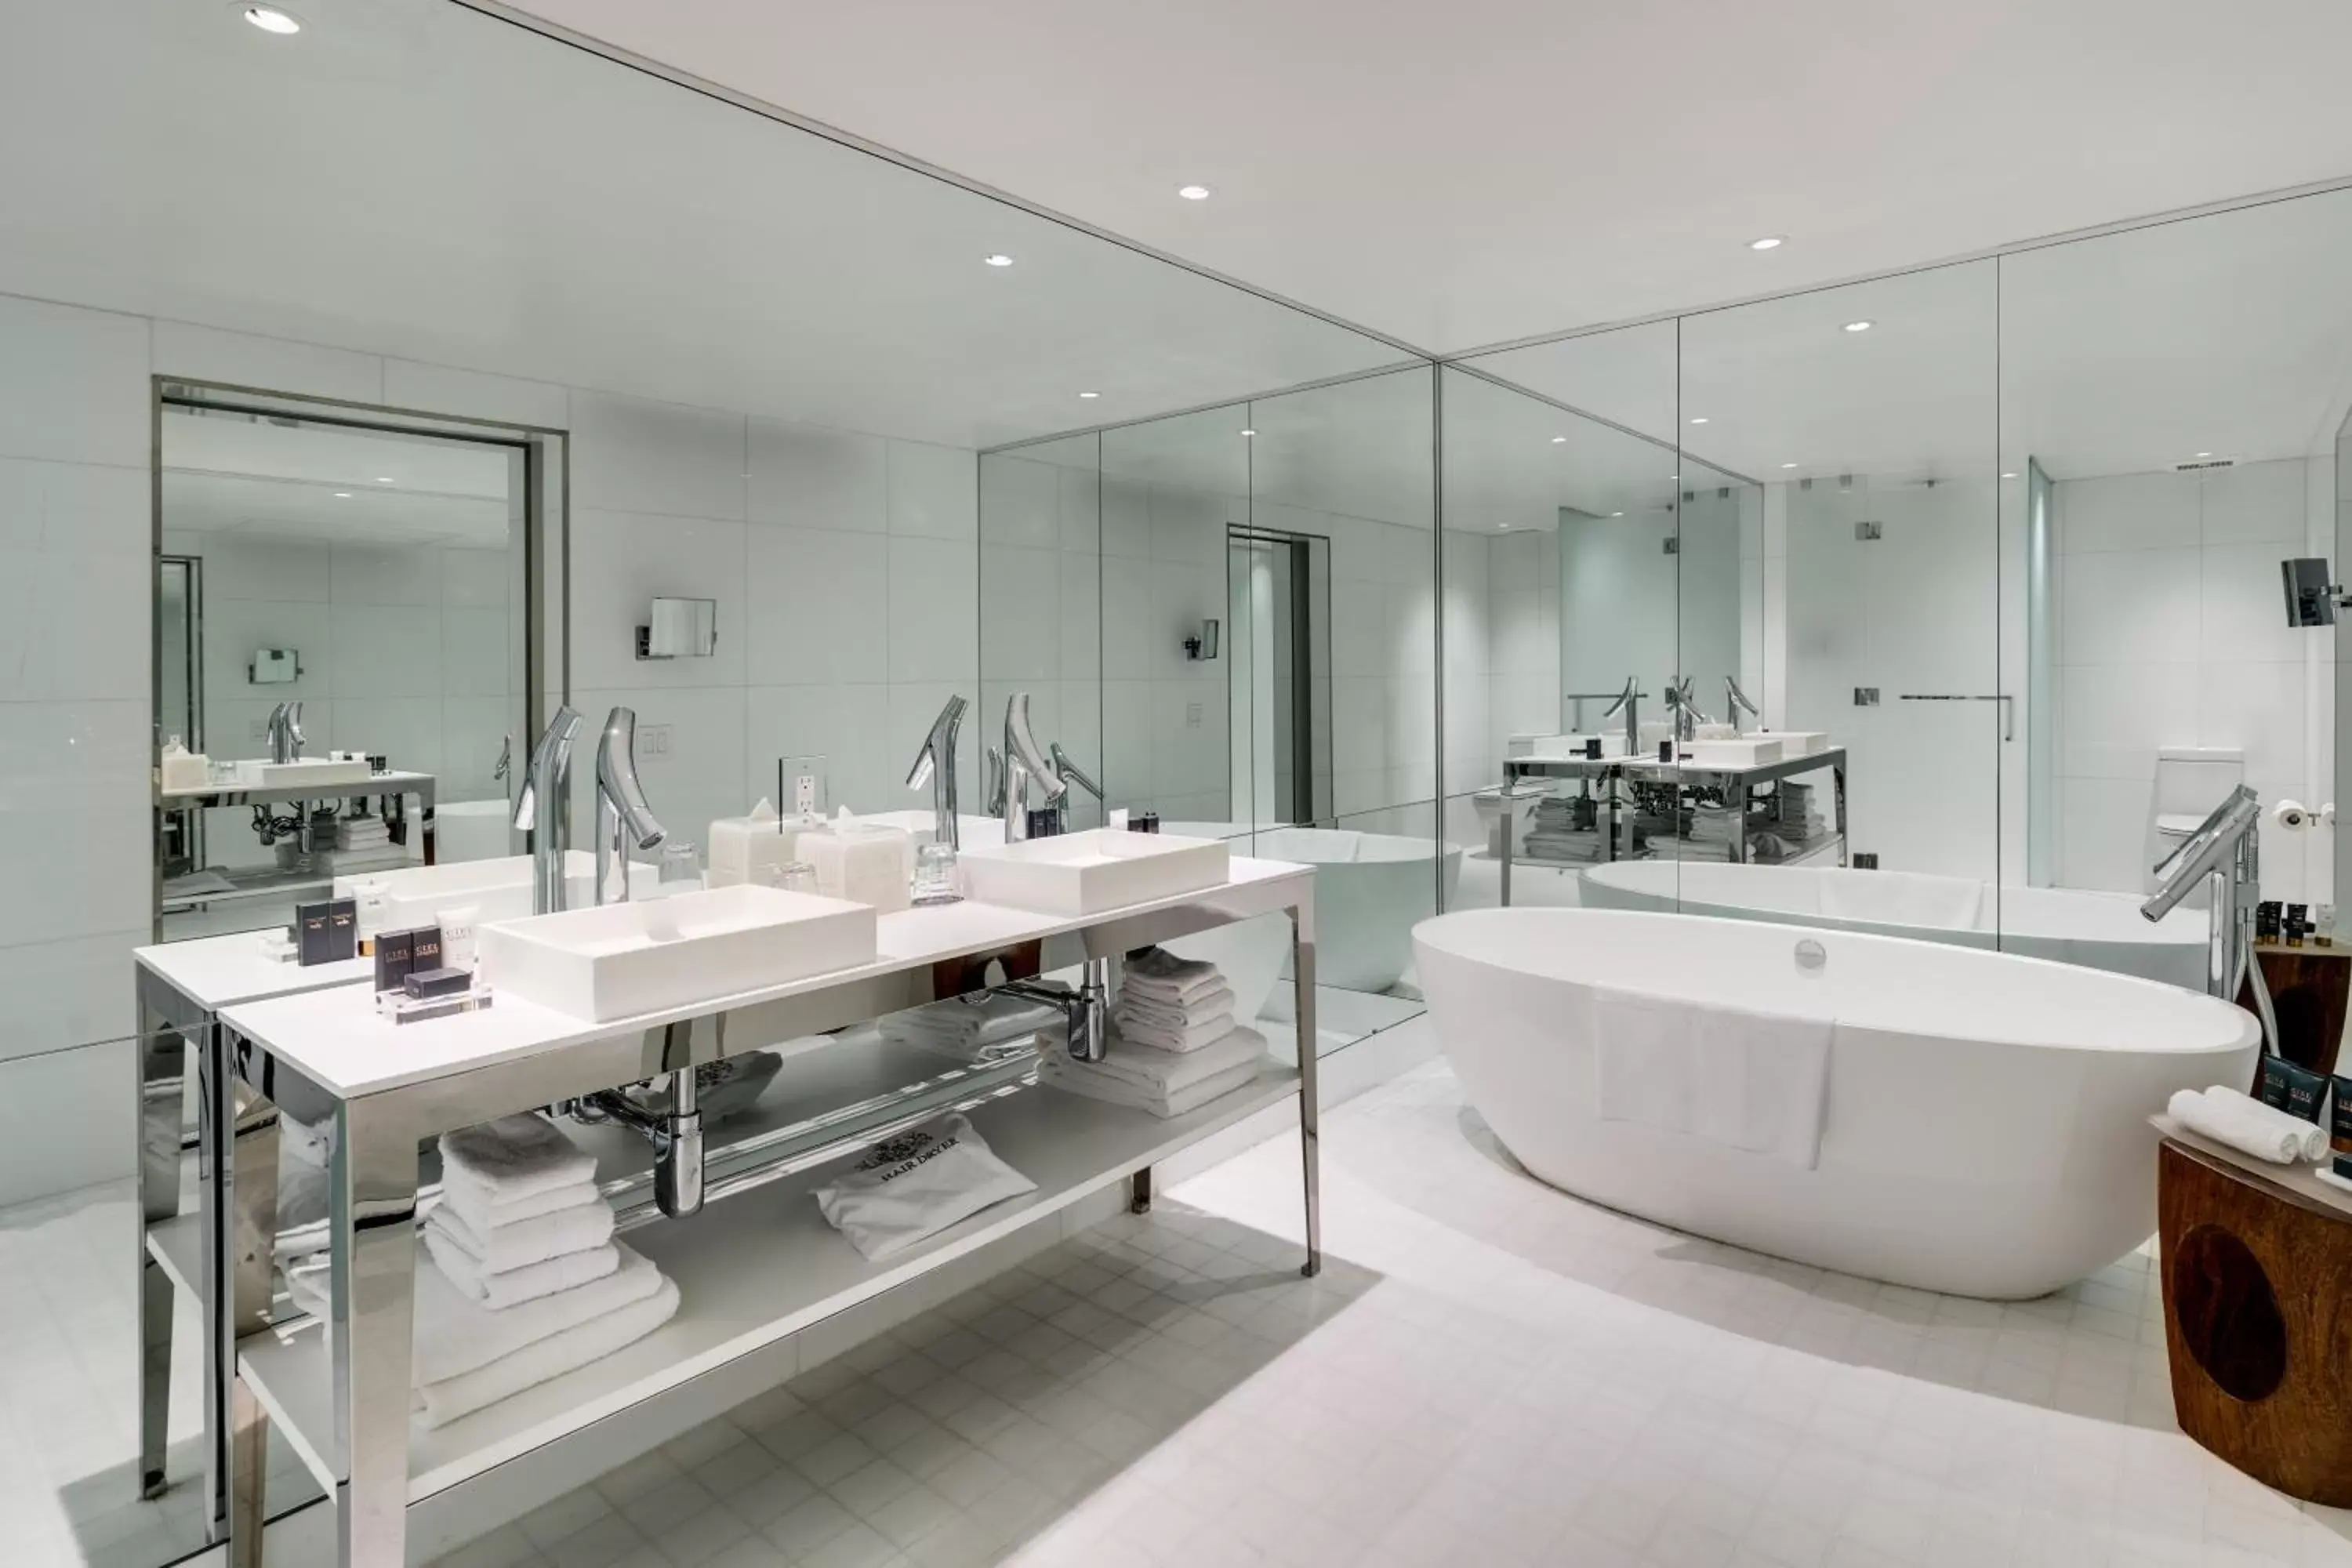 Shower, Bathroom in SLS Brickell